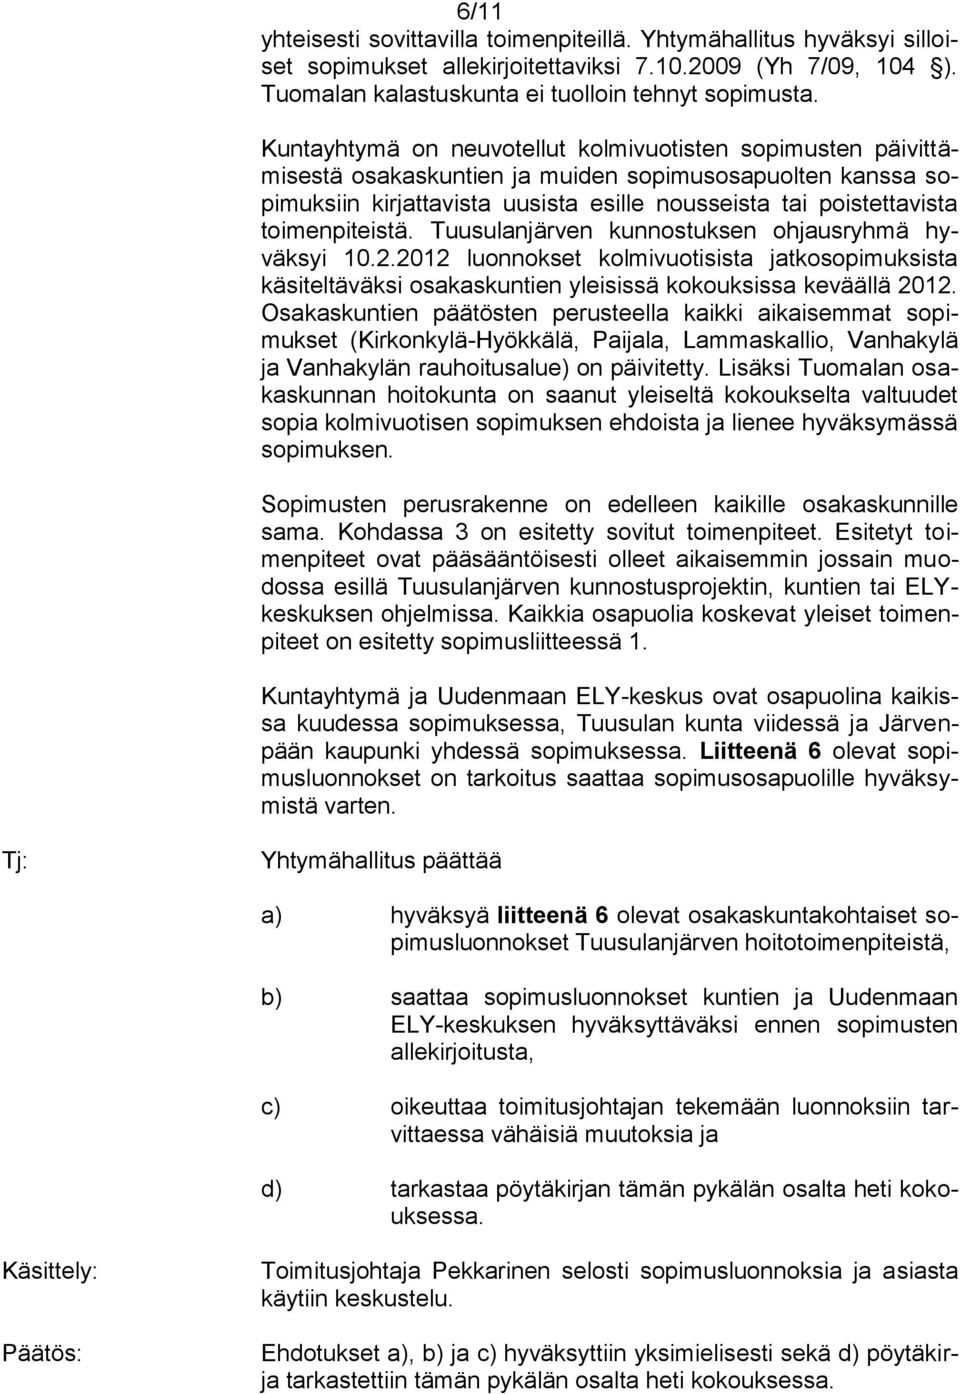 toimenpiteistä. Tuusulanjärven kunnostuksen ohjausryhmä hyväksyi 10.2.2012 luonnokset kolmivuotisista jatkosopimuksista käsiteltäväksi osakaskuntien yleisissä kokouksissa keväällä 2012.